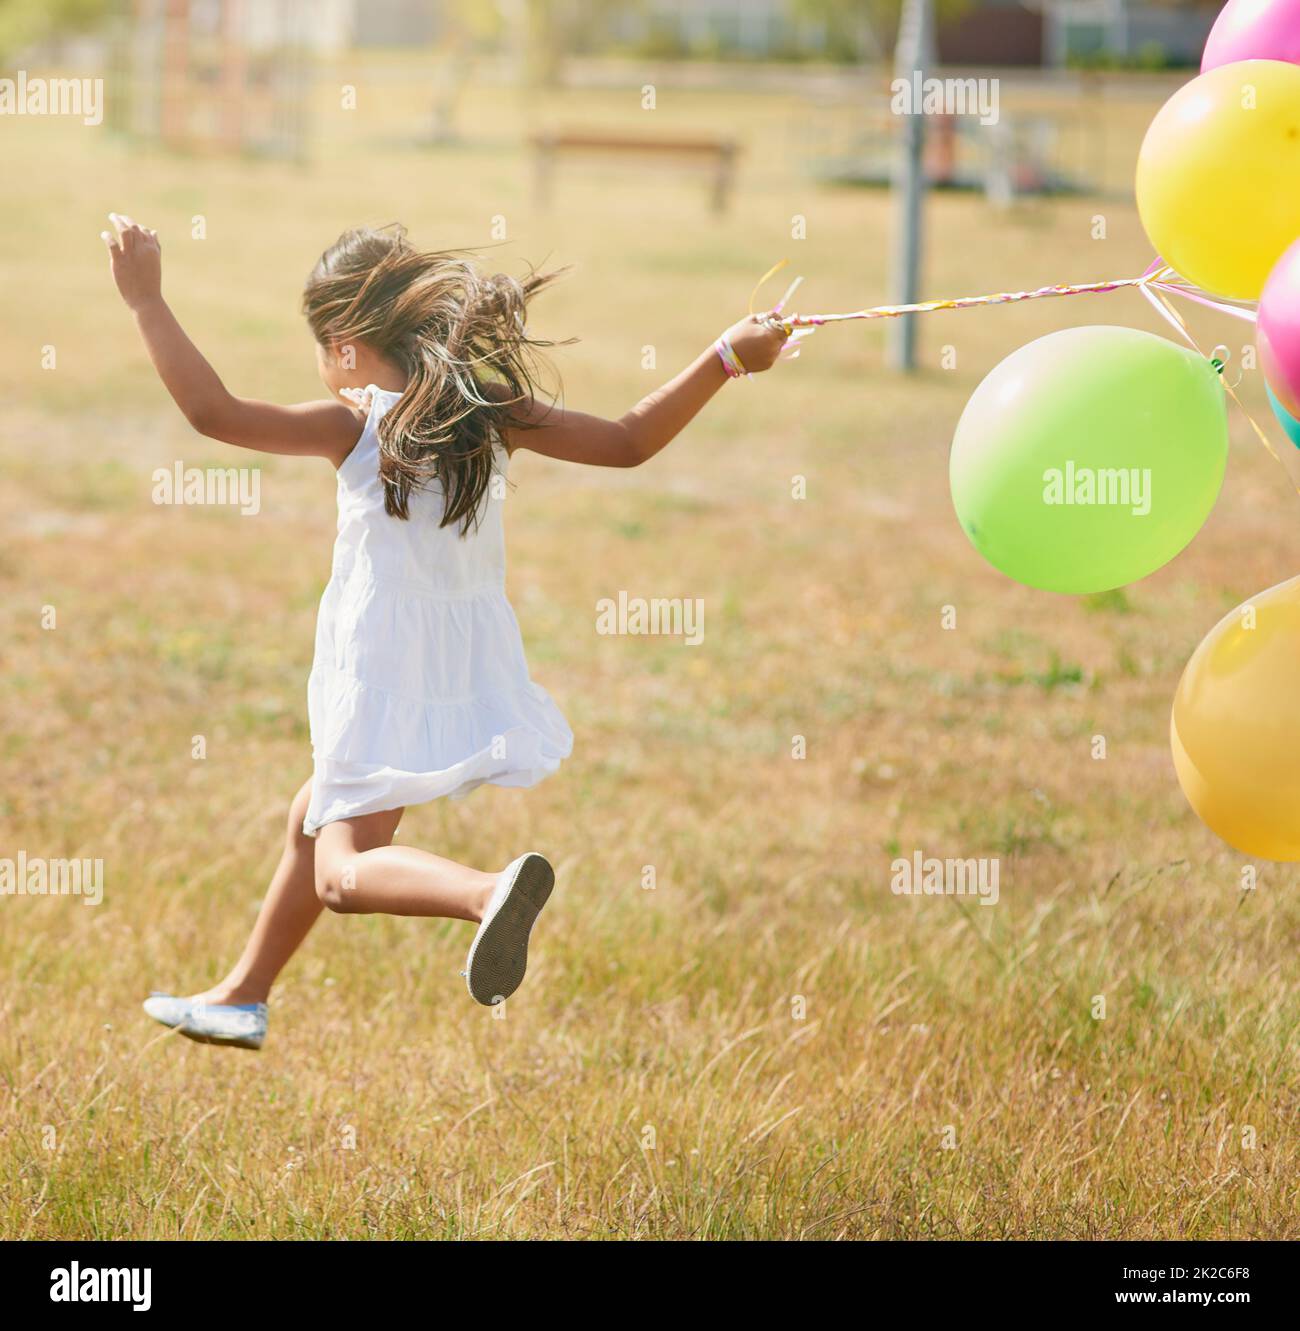 Glücklich hüpfend. Rückansicht eines kleinen Mädchens, das mit einer Reihe von Luftballons draußen durch ein Feld läuft. Stockfoto